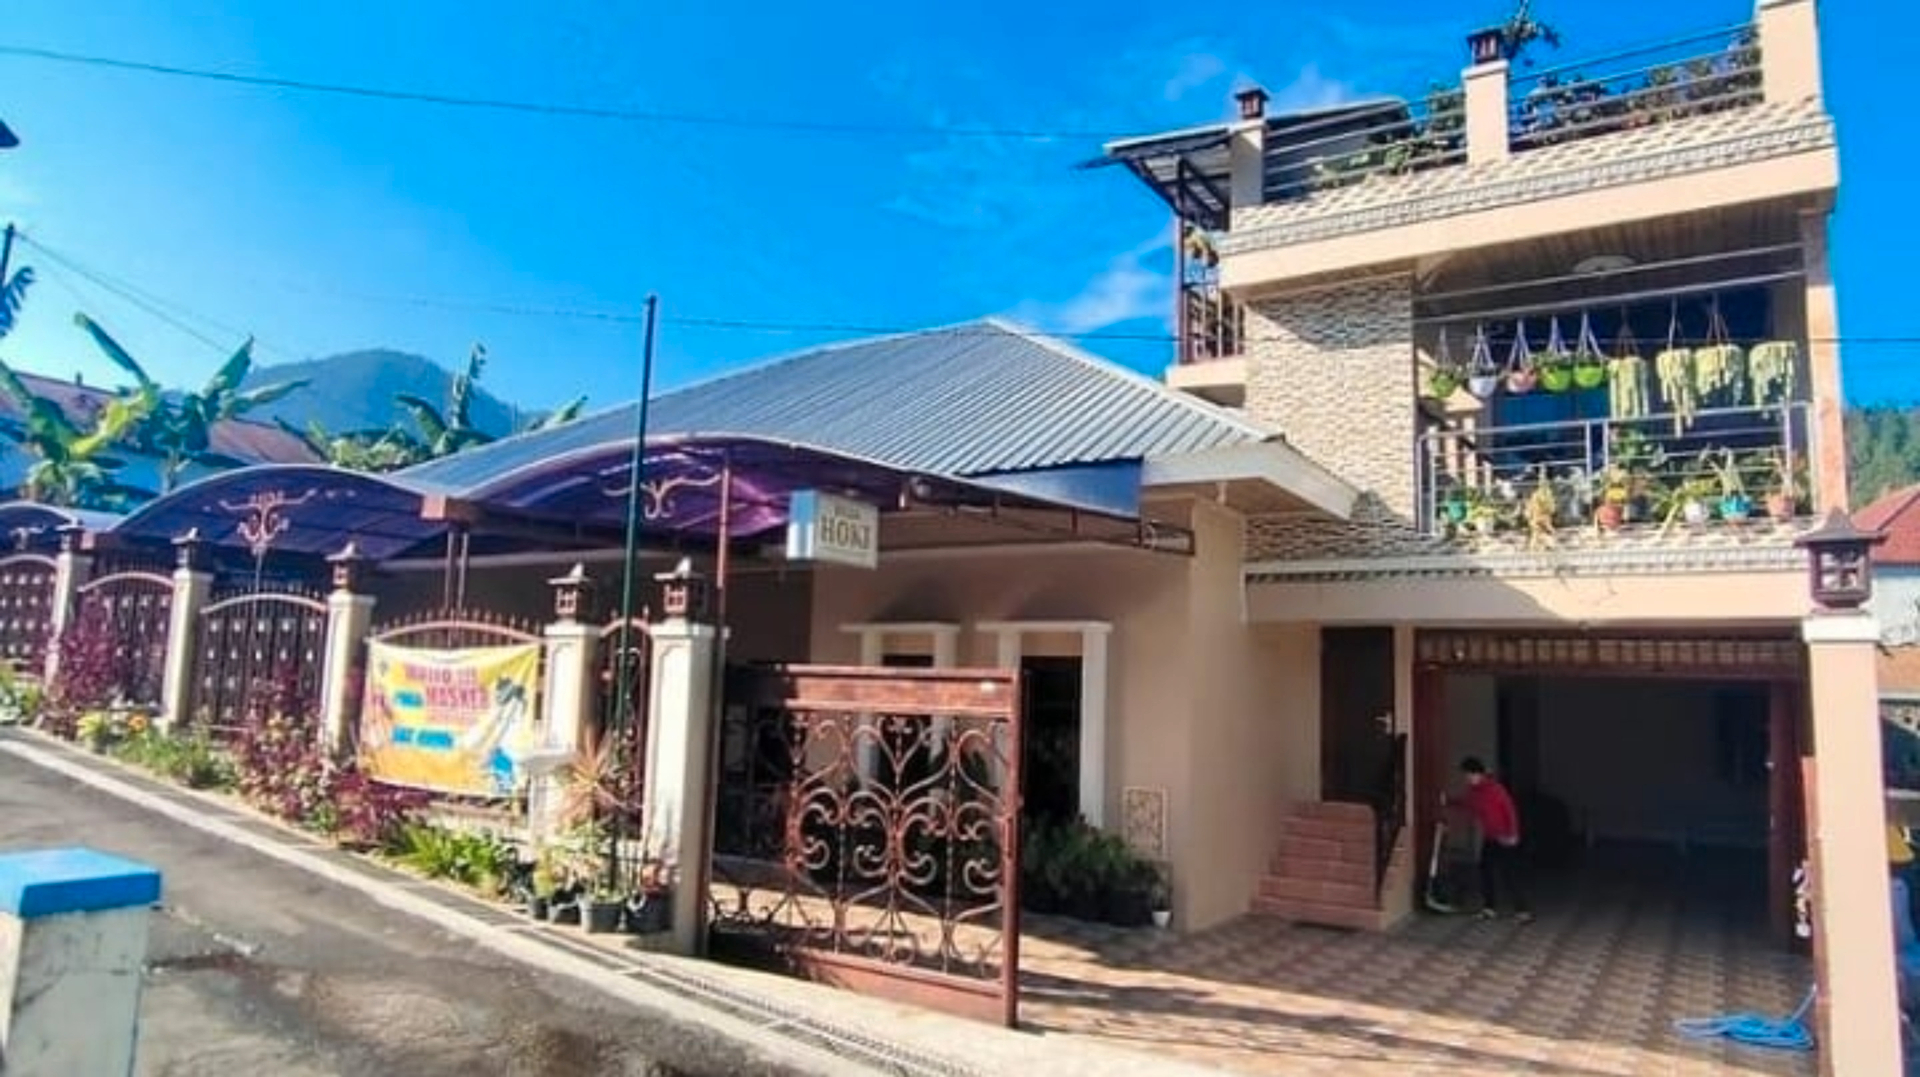 Exterior & Views, Villa hoki, Karanganyar